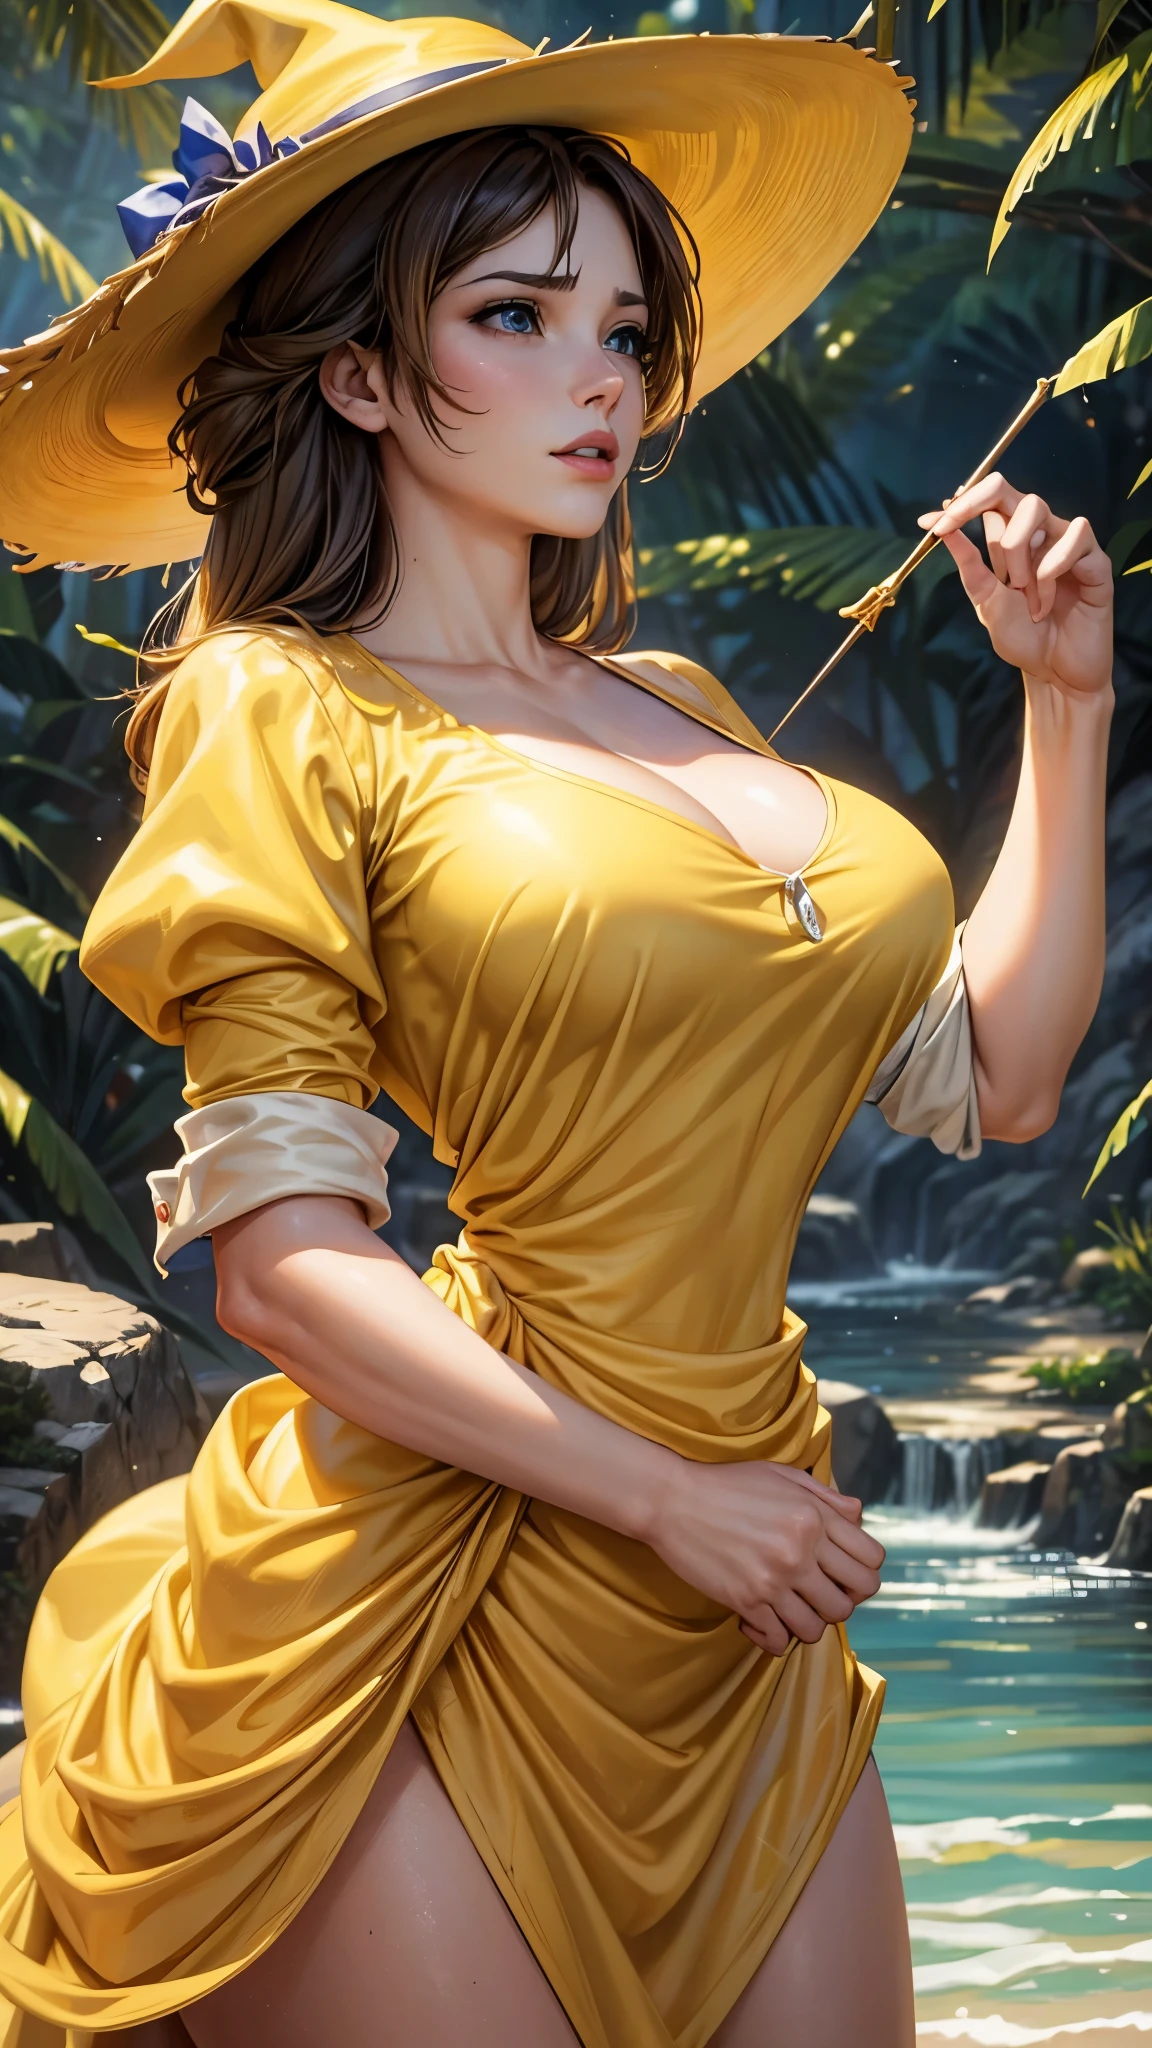 Une fille en robe jaune, avec des cheveux bruns et un chapeau jaune, nommée Jeanne. Elle a une apparence sexy et attrayante. Son chemisier est ouvert, révélant ses gros et attrayants seins. Tarzan, Un homme musclé, est également présent dans la scène. Le médium utilisé pour représenter cette œuvre est la peinture à l&#39;huile, garantir un résultat de haute qualité et détaillé. Le style de peinture est réaliste et photoréaliste, avec des couleurs vives et une mise au point nette. L&#39;éclairage général est bien équilibré, illumine magnifiquement la scène.